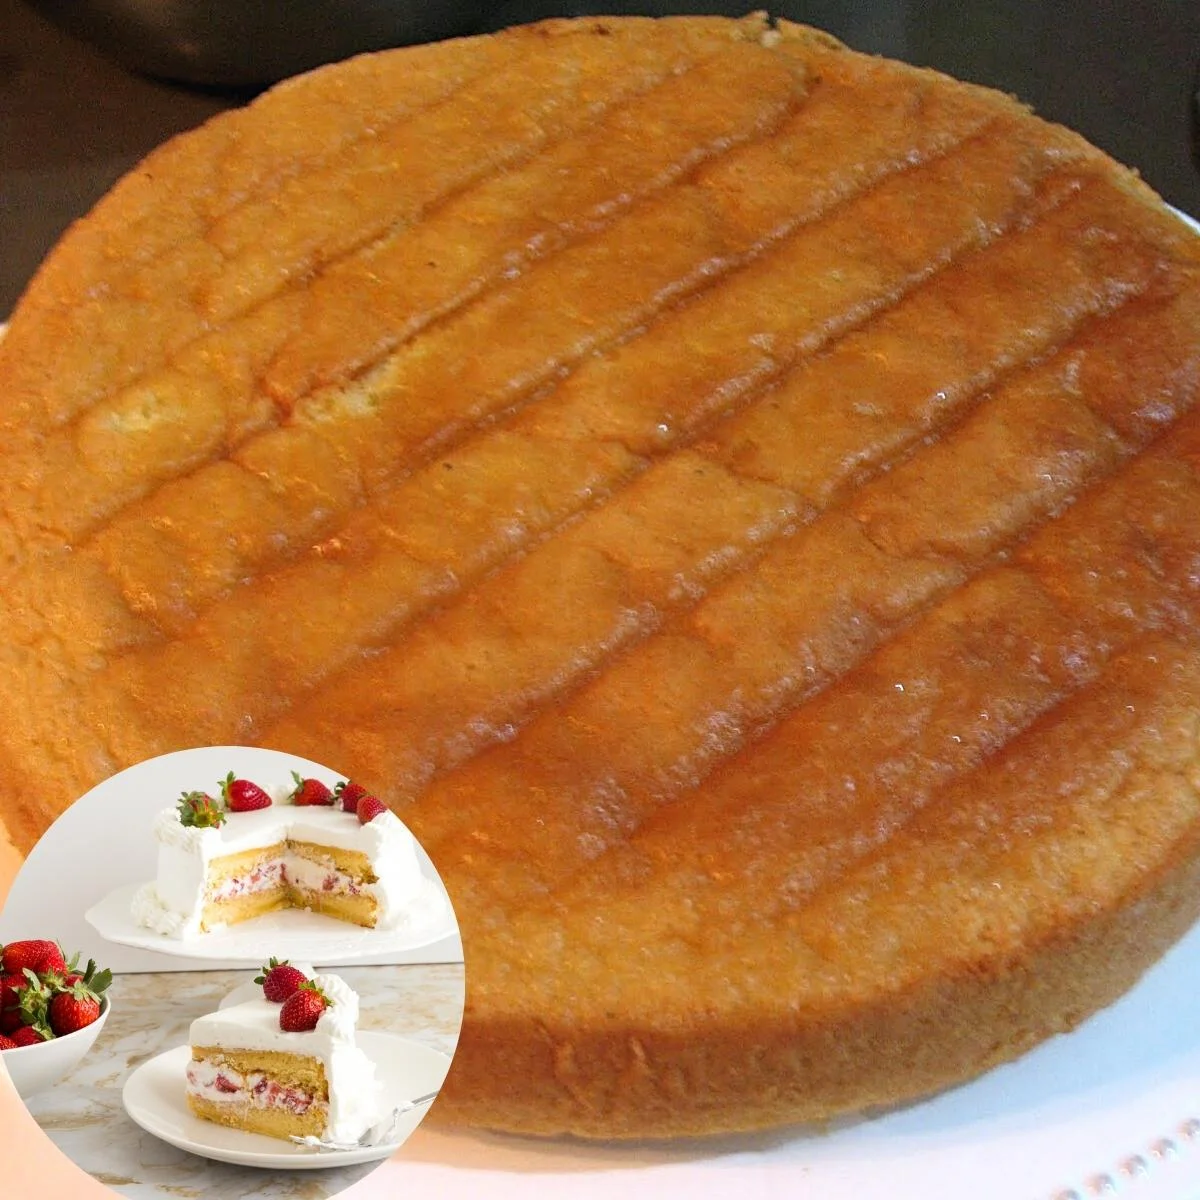 Genoise Sponge Cake